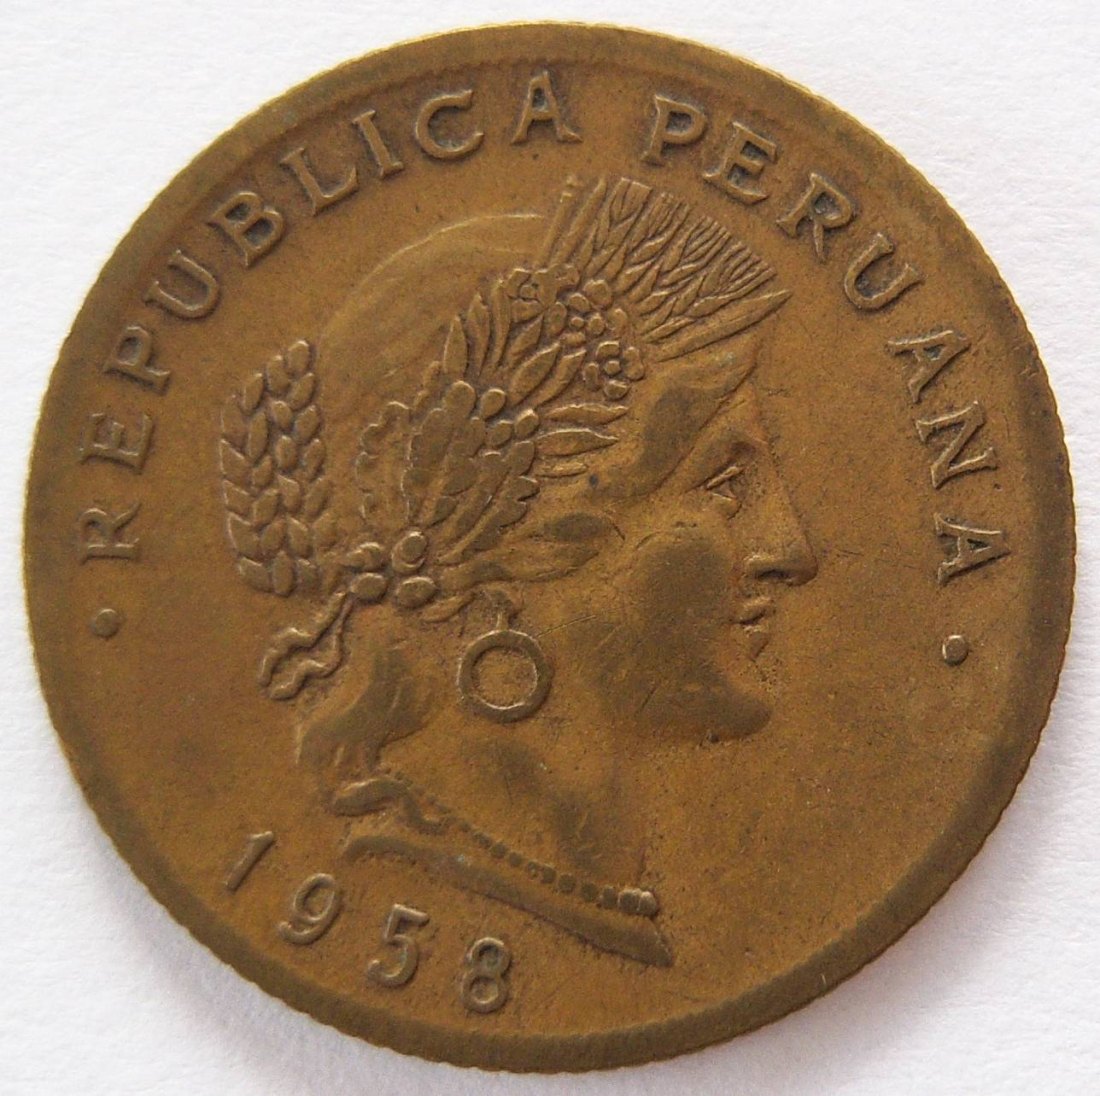  Peru 20 Centavos 1958   